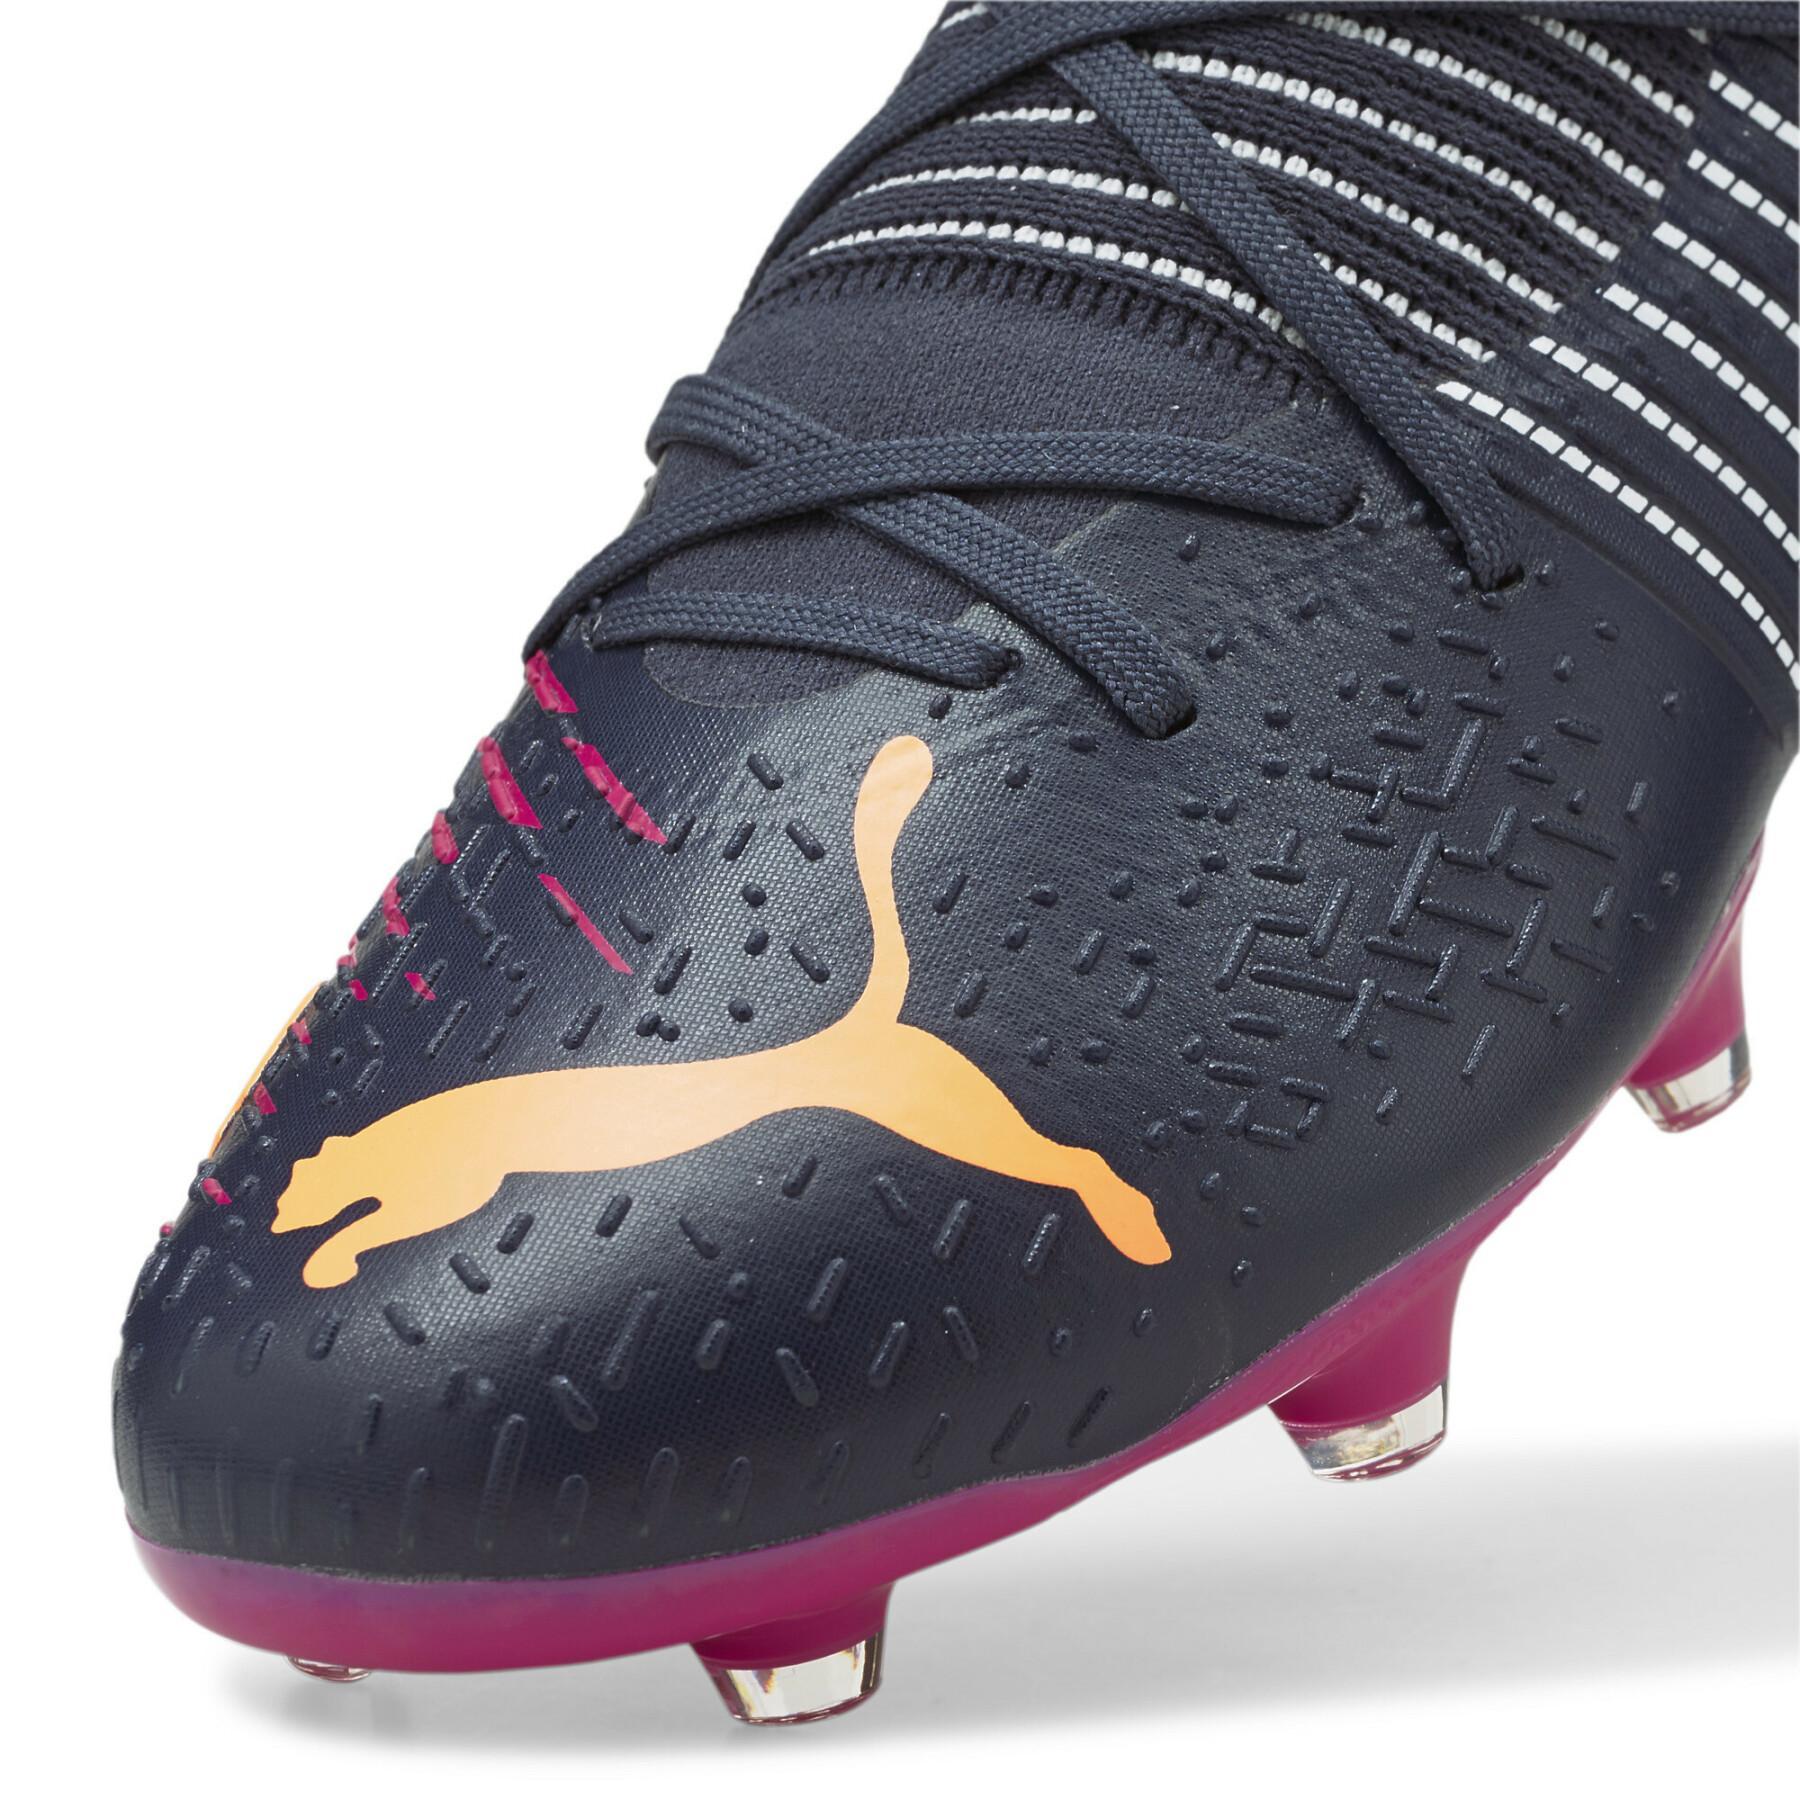 Sapatos de futebol Puma FUTURE Z 3.2 FG/AG